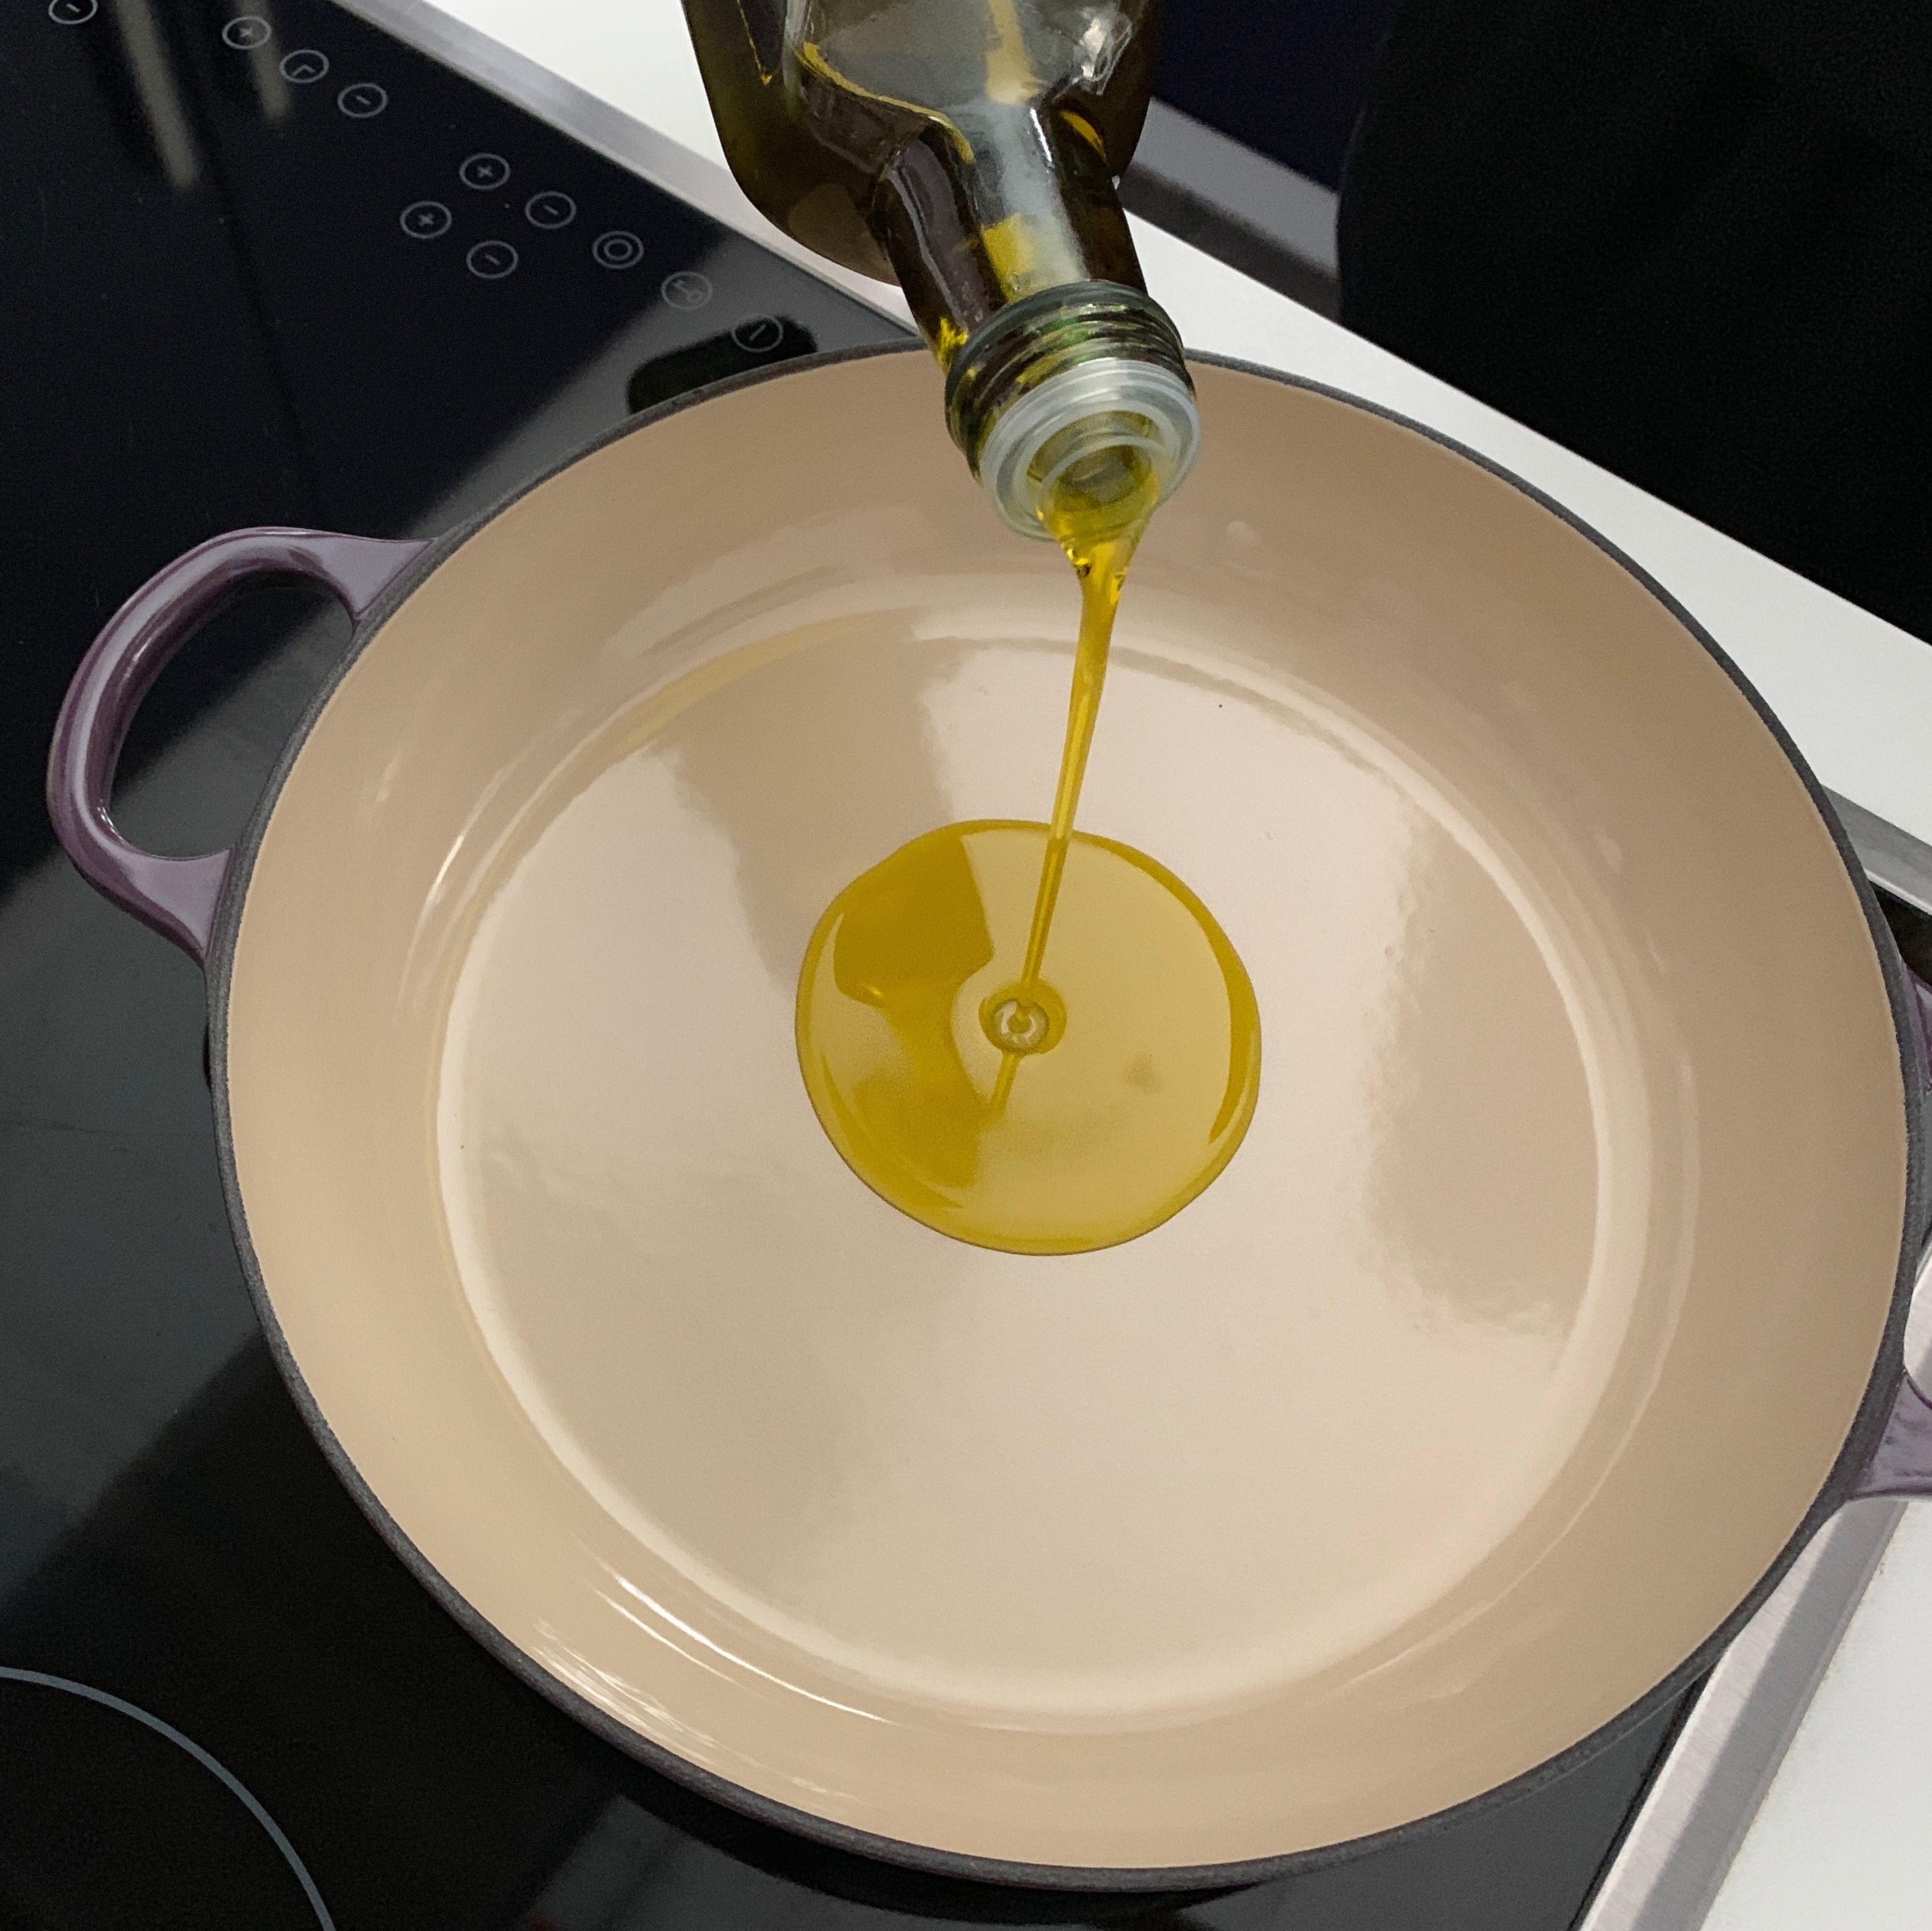 Olivenöl in eine Pfanne geben und auf mittlerer Stufe erhitzen.